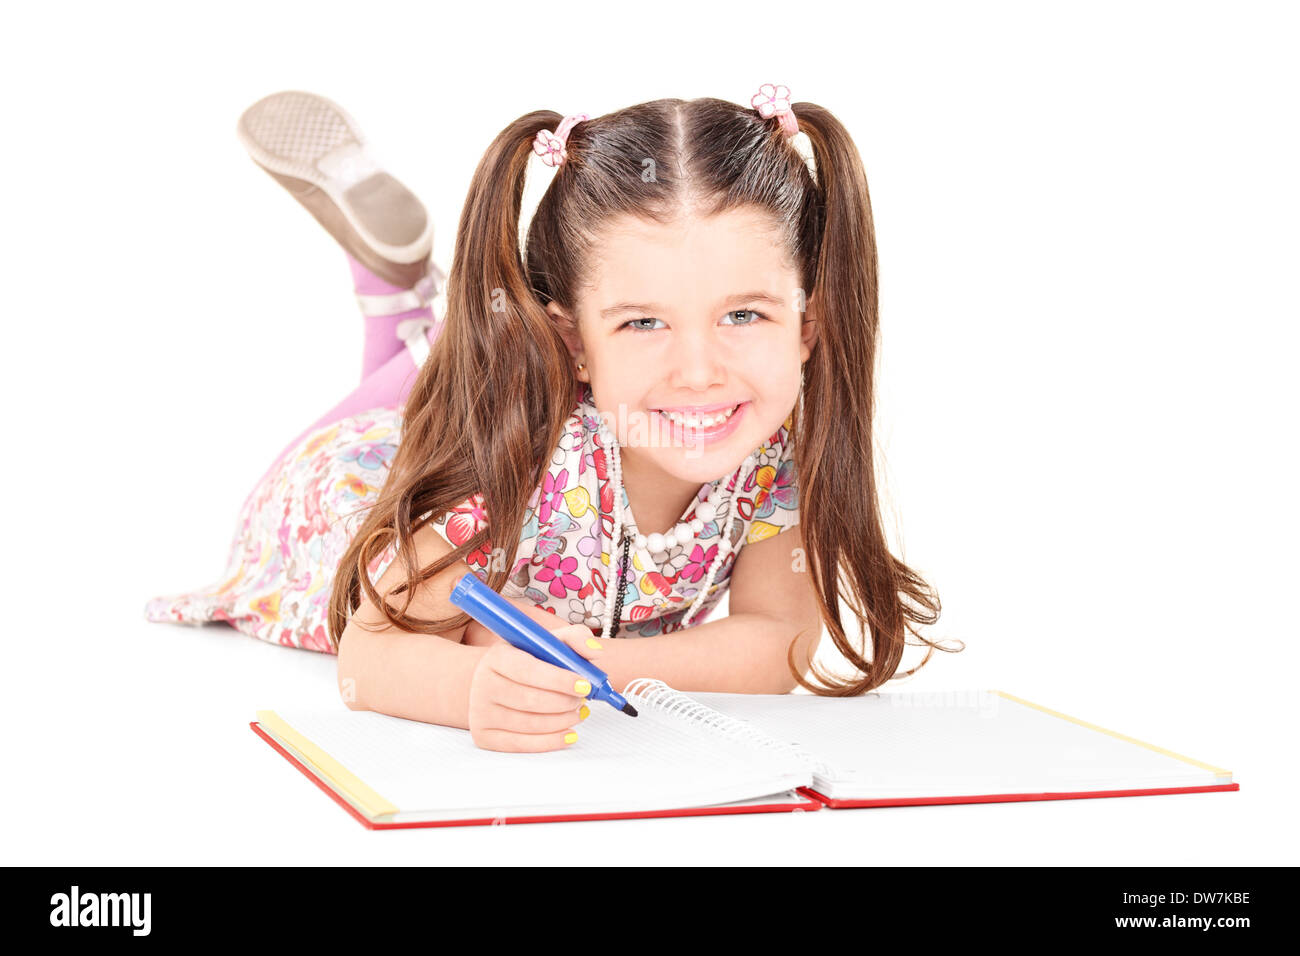 Kleines Mädchen auf den Boden legen und zeichnen von Bildern in einer Arbeitsmappe Stockfoto